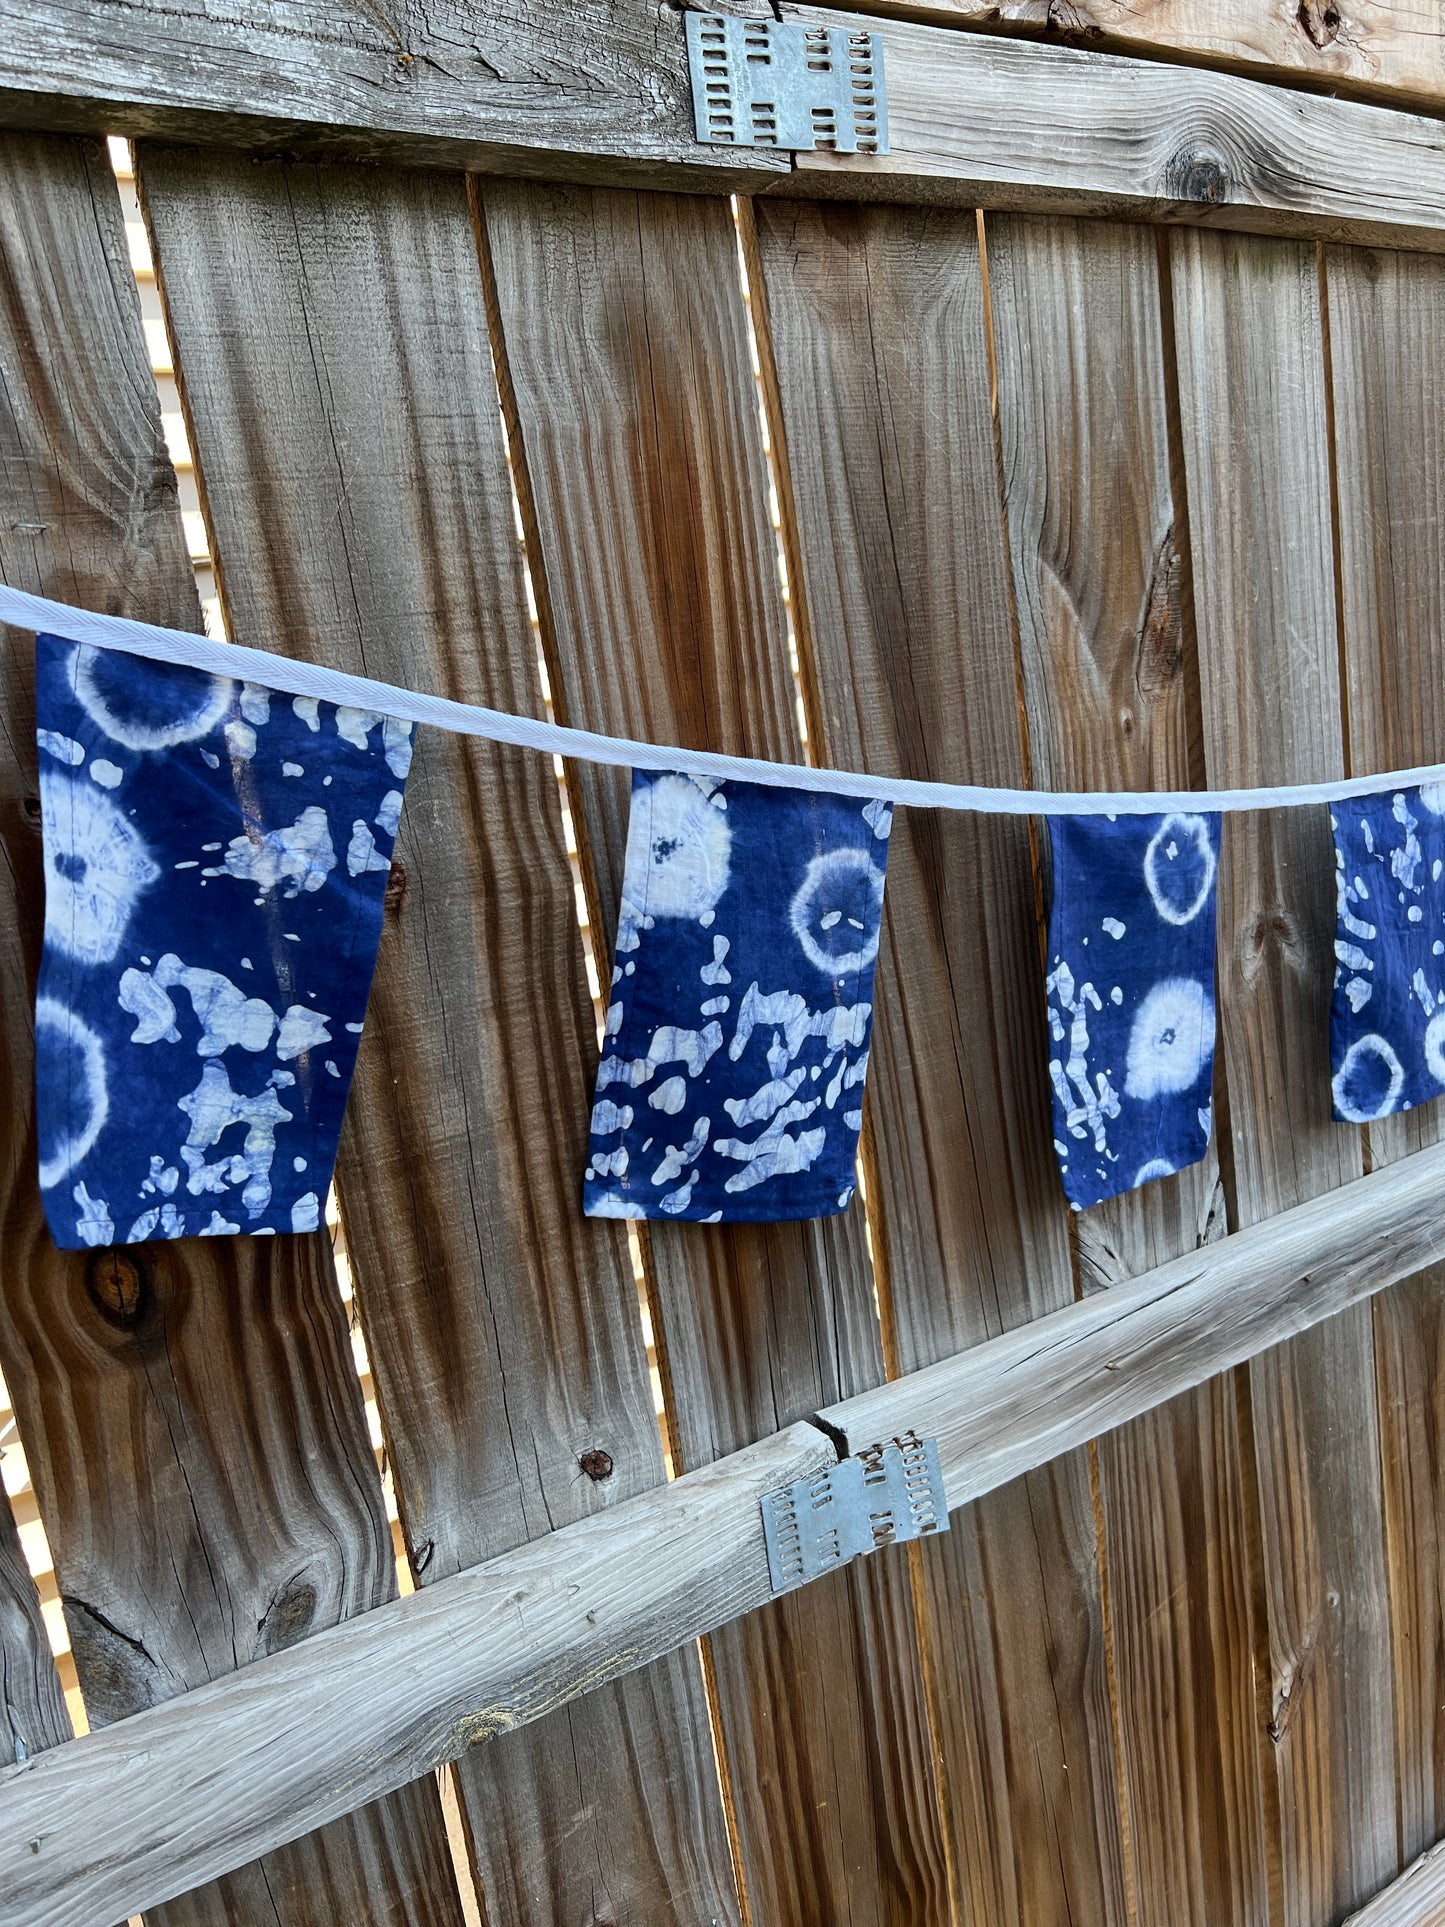 Fabric Bunting Indigo Blue Shibori Batik